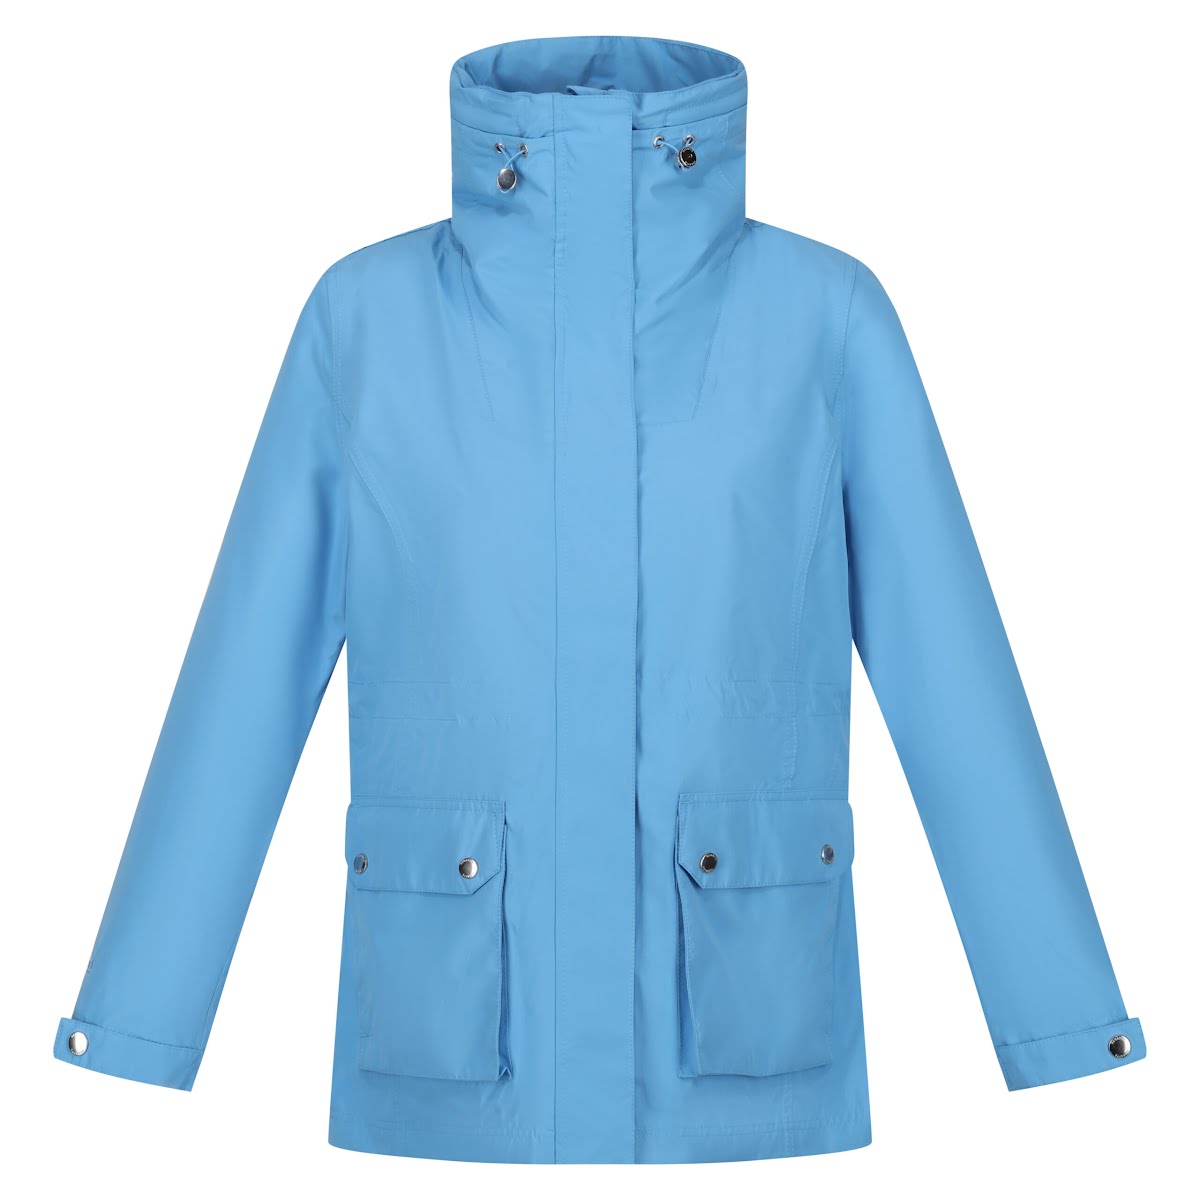 Novalee Waterproof Jacket in Elysium Blue, €69.95